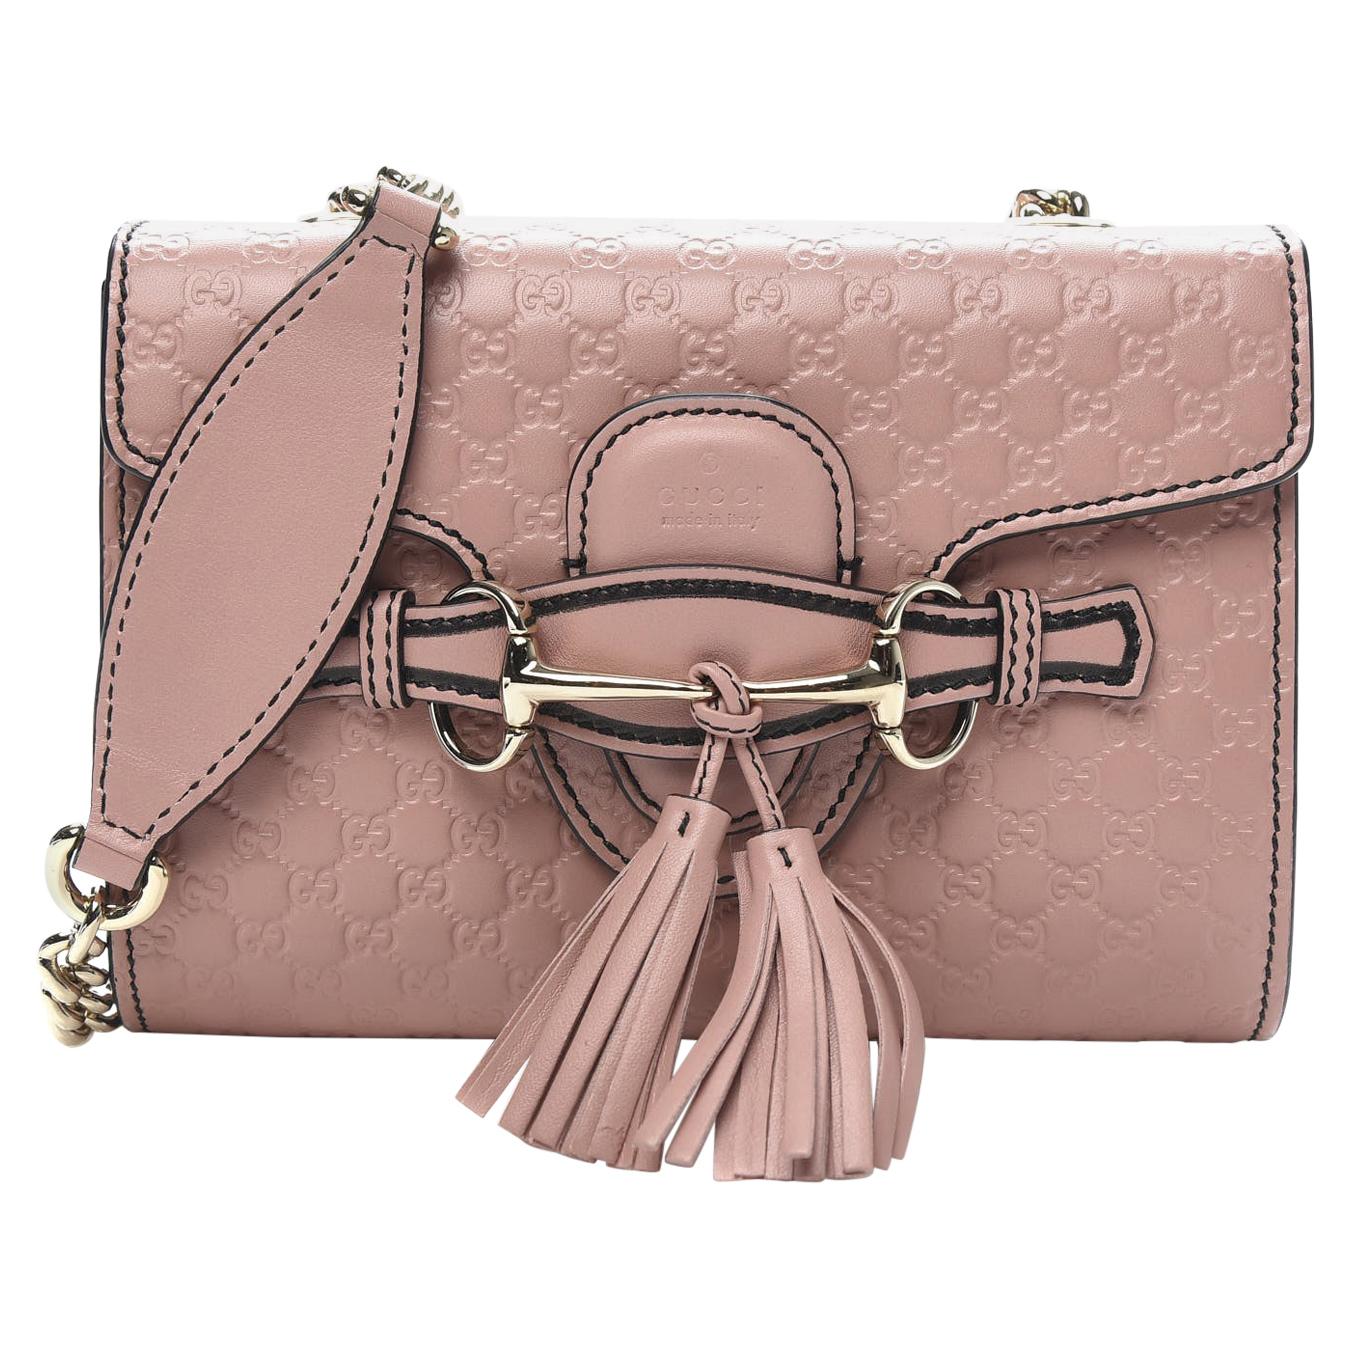 Gucci Microguccissima Mini Emily Shoulder Bag - Soft Pink